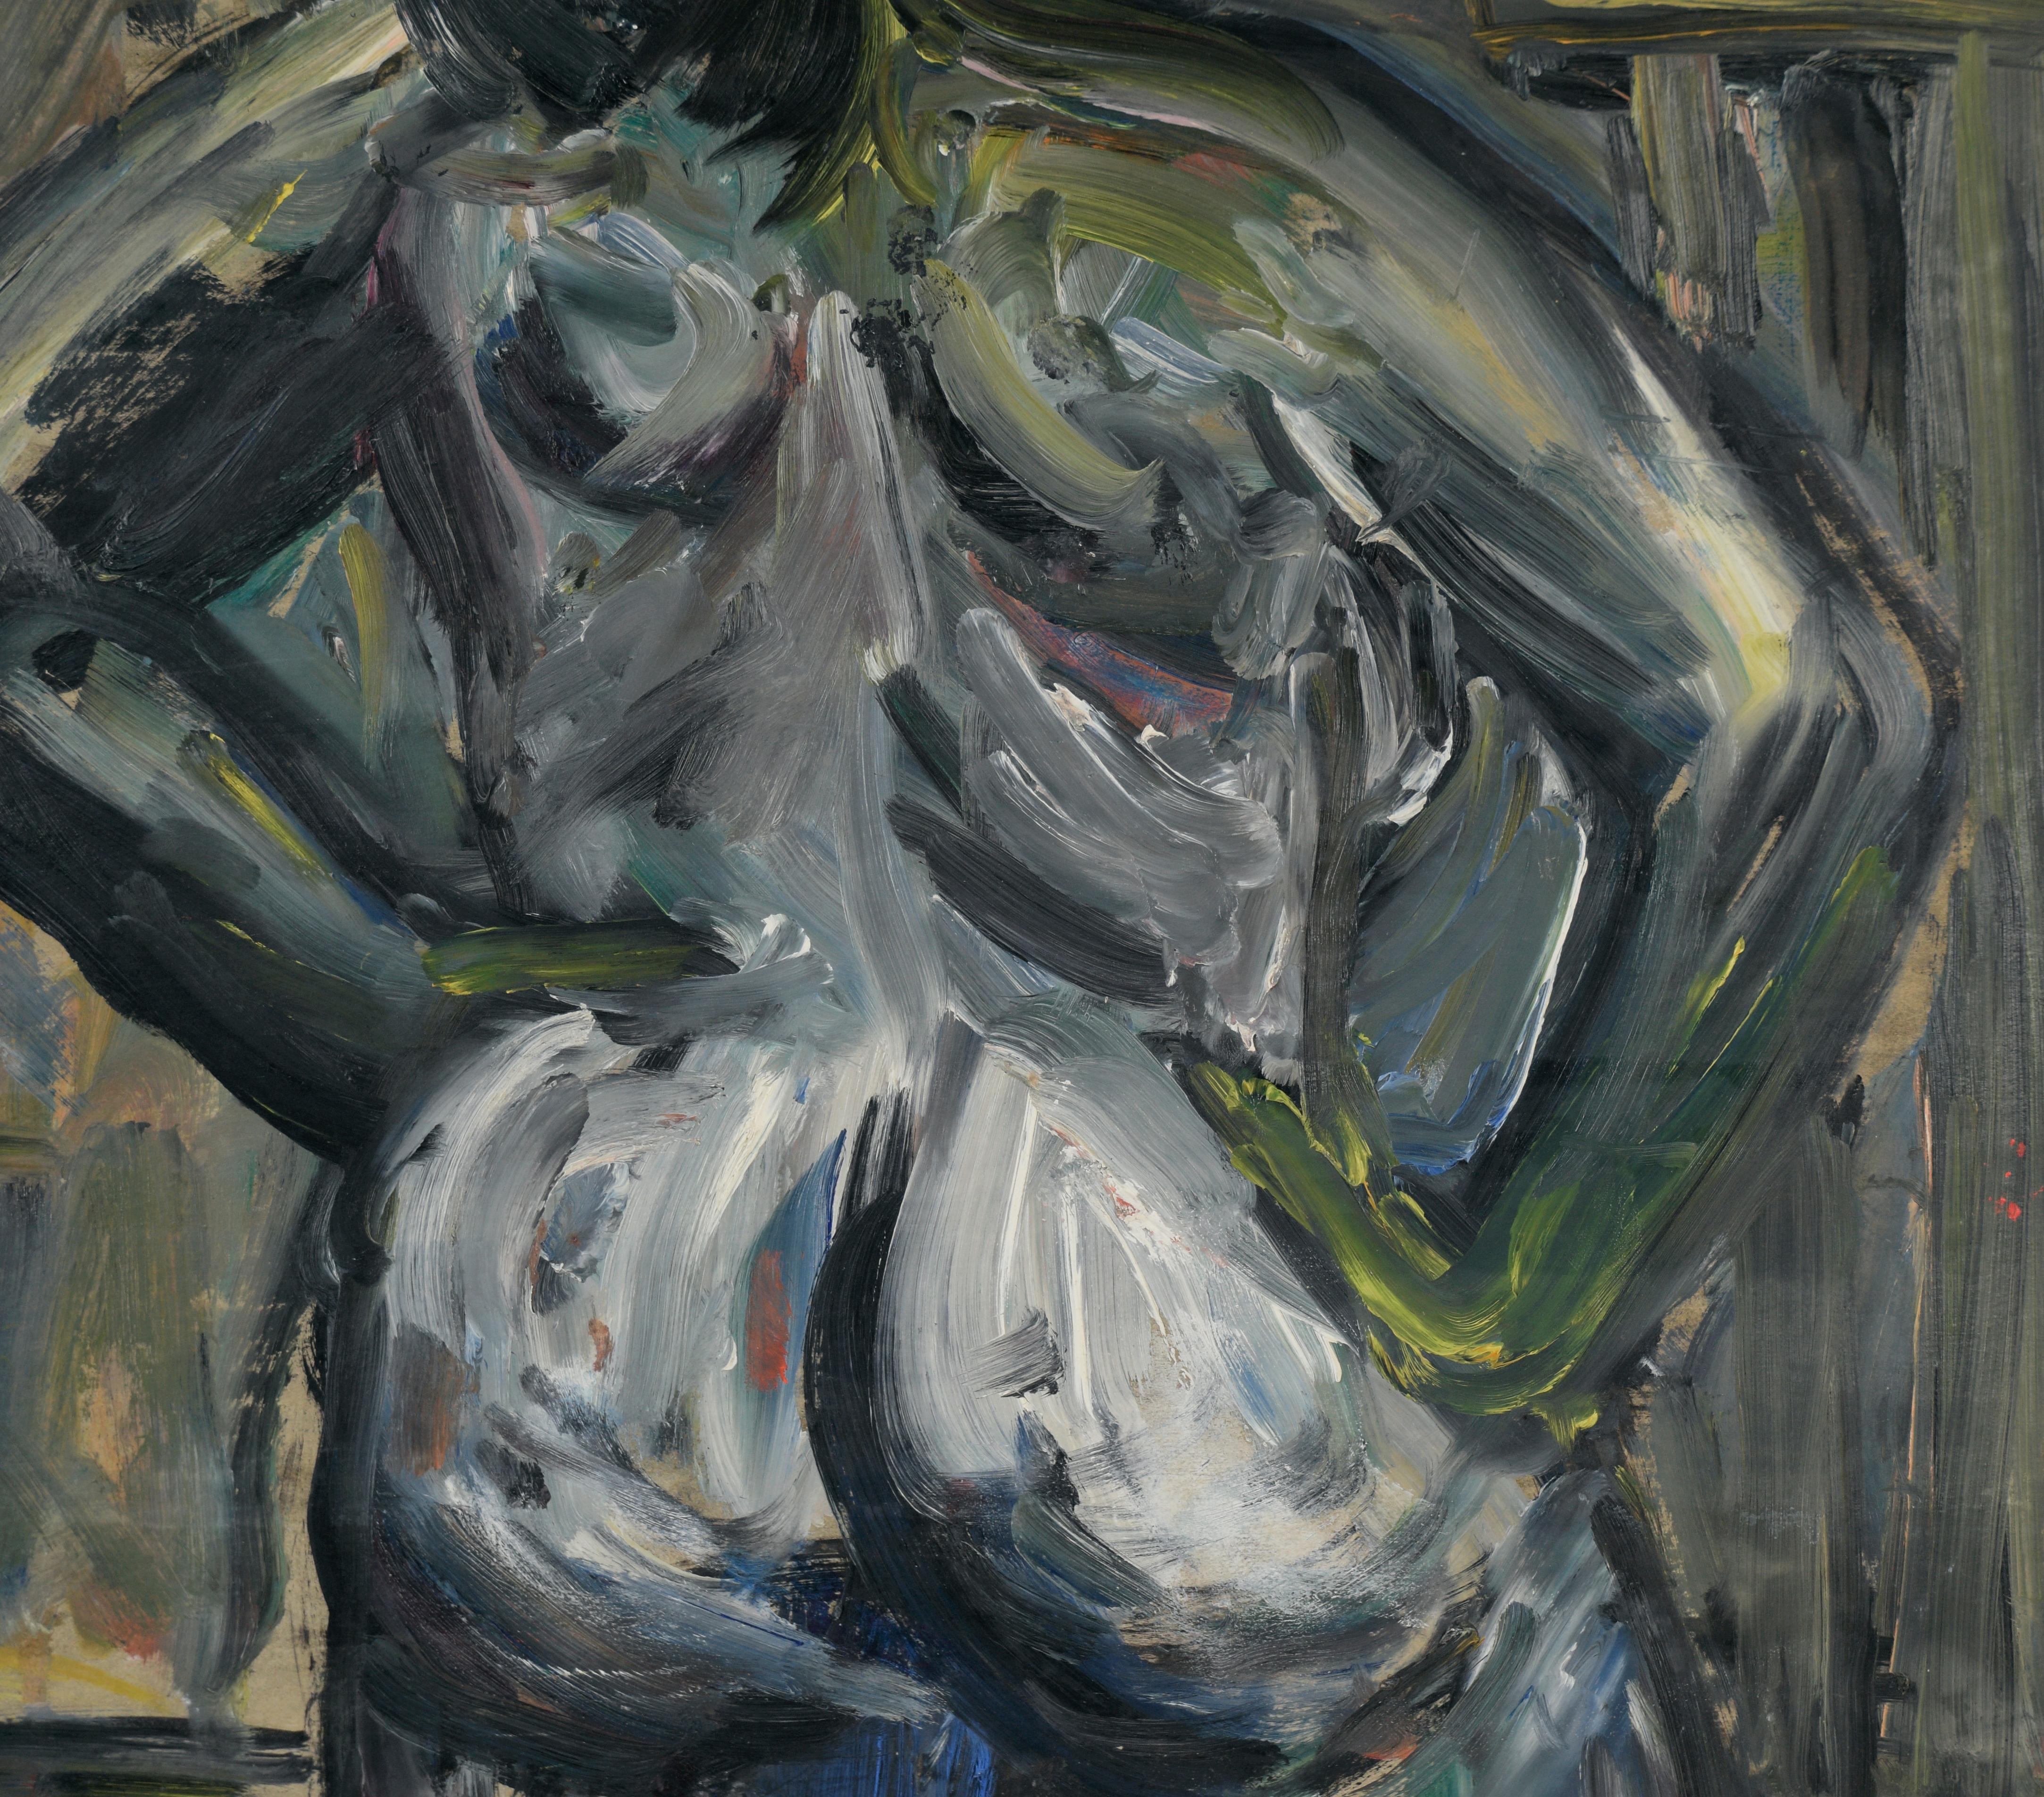 Bay Area Expressionist Stehender Akt von hinten in Öl auf Pappe

Stehender Frauenakt von hinten von Honora Berg (Amerikanerin, 1897-1985). Kühne Darstellung einer nackten Frau mit dunklem Haar. Das Modell ist in dunklen Grautönen gehalten, mit